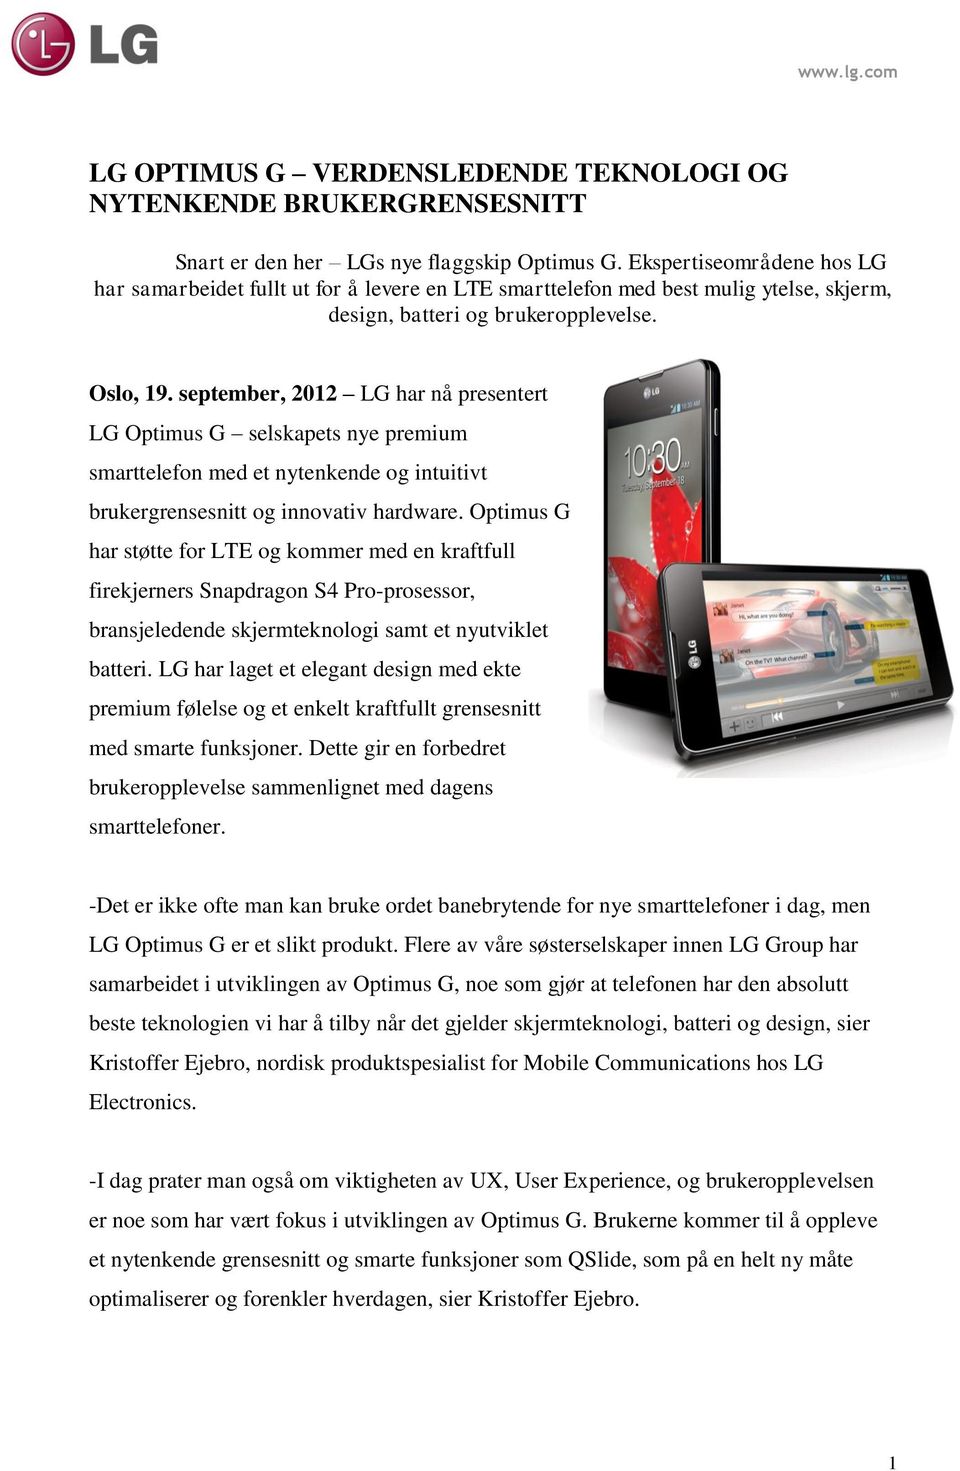 september, 2012 LG har nå presentert LG Optimus G selskapets nye premium smarttelefon med et nytenkende og intuitivt brukergrensesnitt og innovativ hardware.